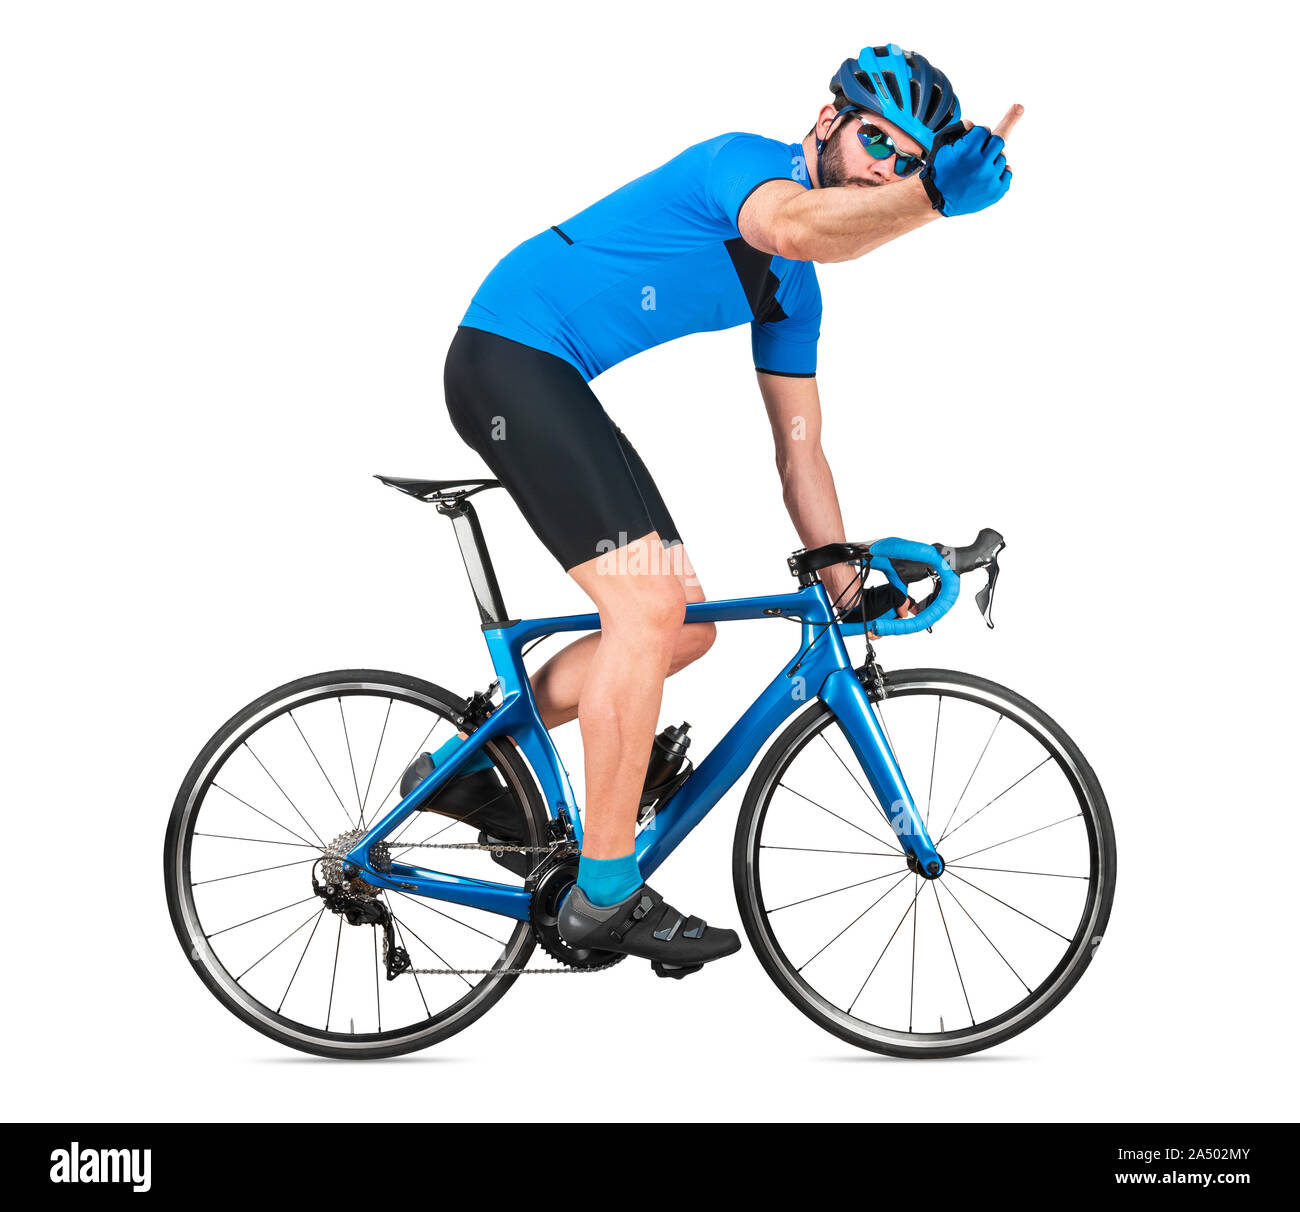 Wütend professionelle Fahrrad road racing Radfahrer racer Blau Sport Jersey auf Light Carbon race zeigt seine Wut Gefühle Mittelfinger. sport Trainin Stockfoto